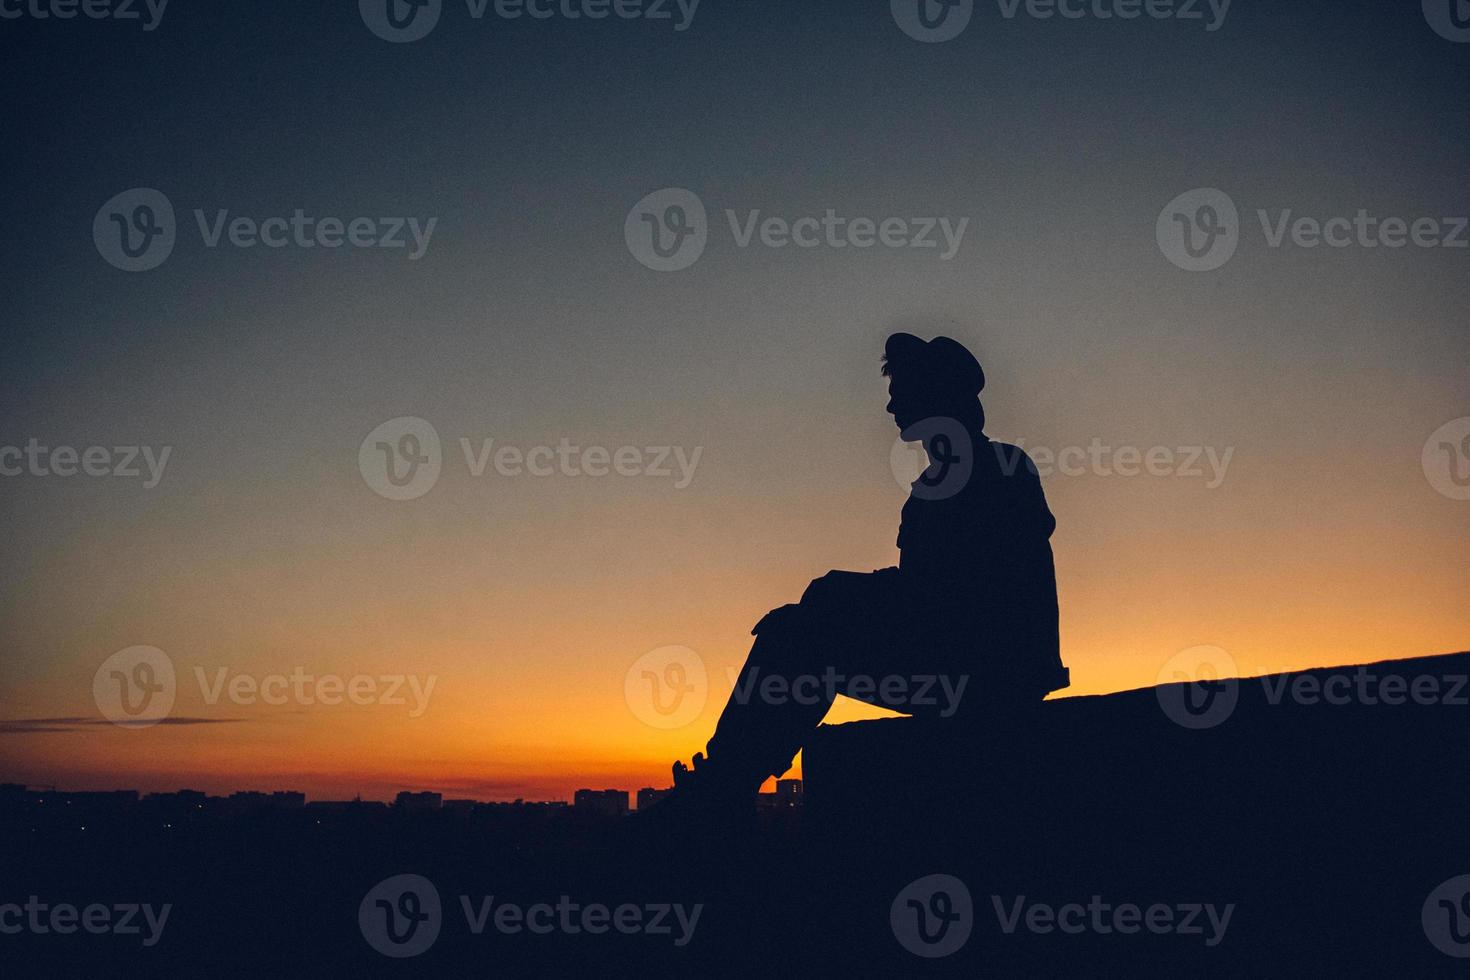 silhouet van het portret van een man met hoed die naar de zonsondergang over de stad kijkt foto